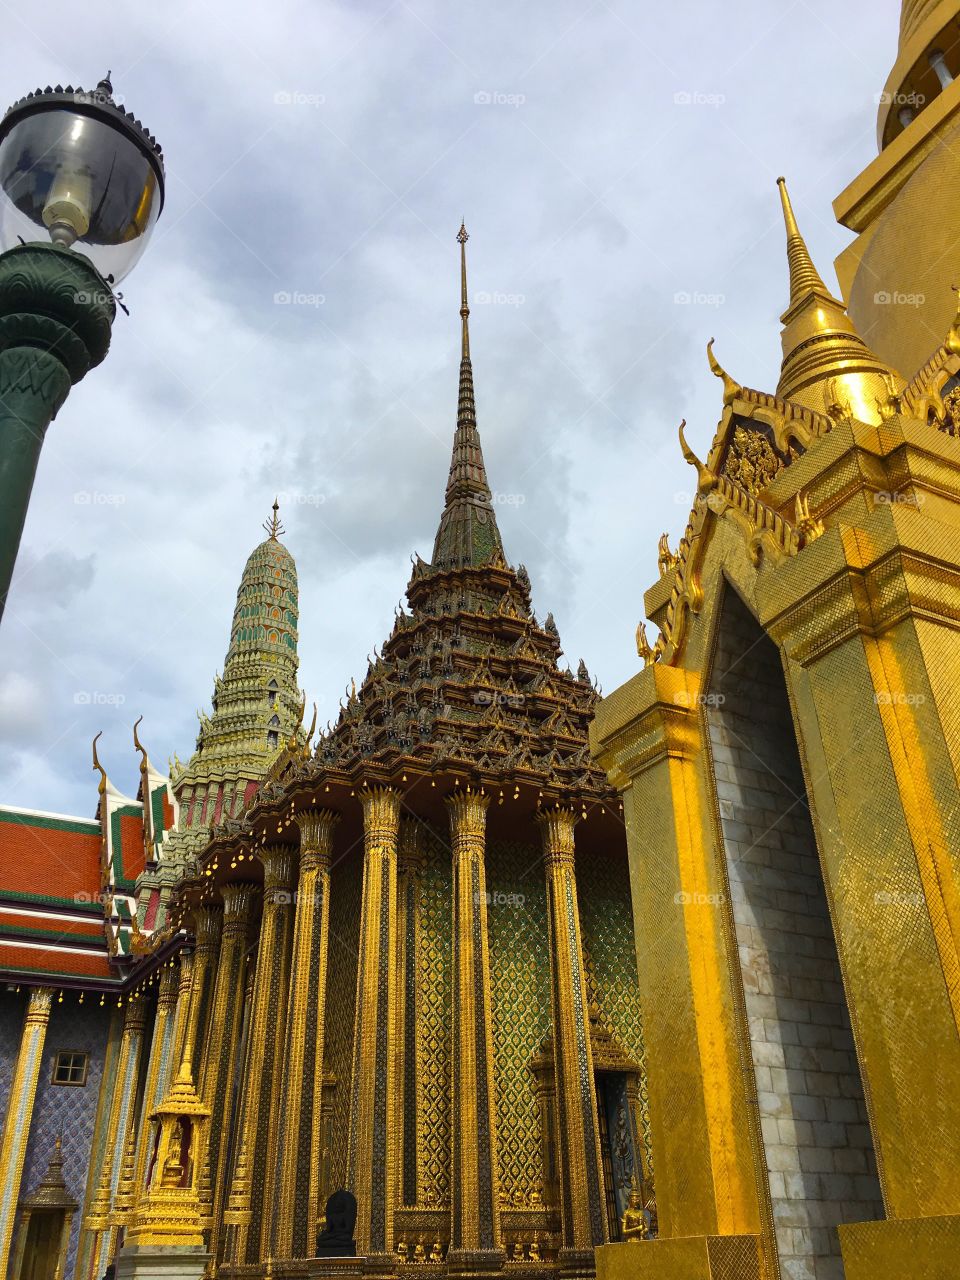 Grand Palace / Bangkok Thailand 17